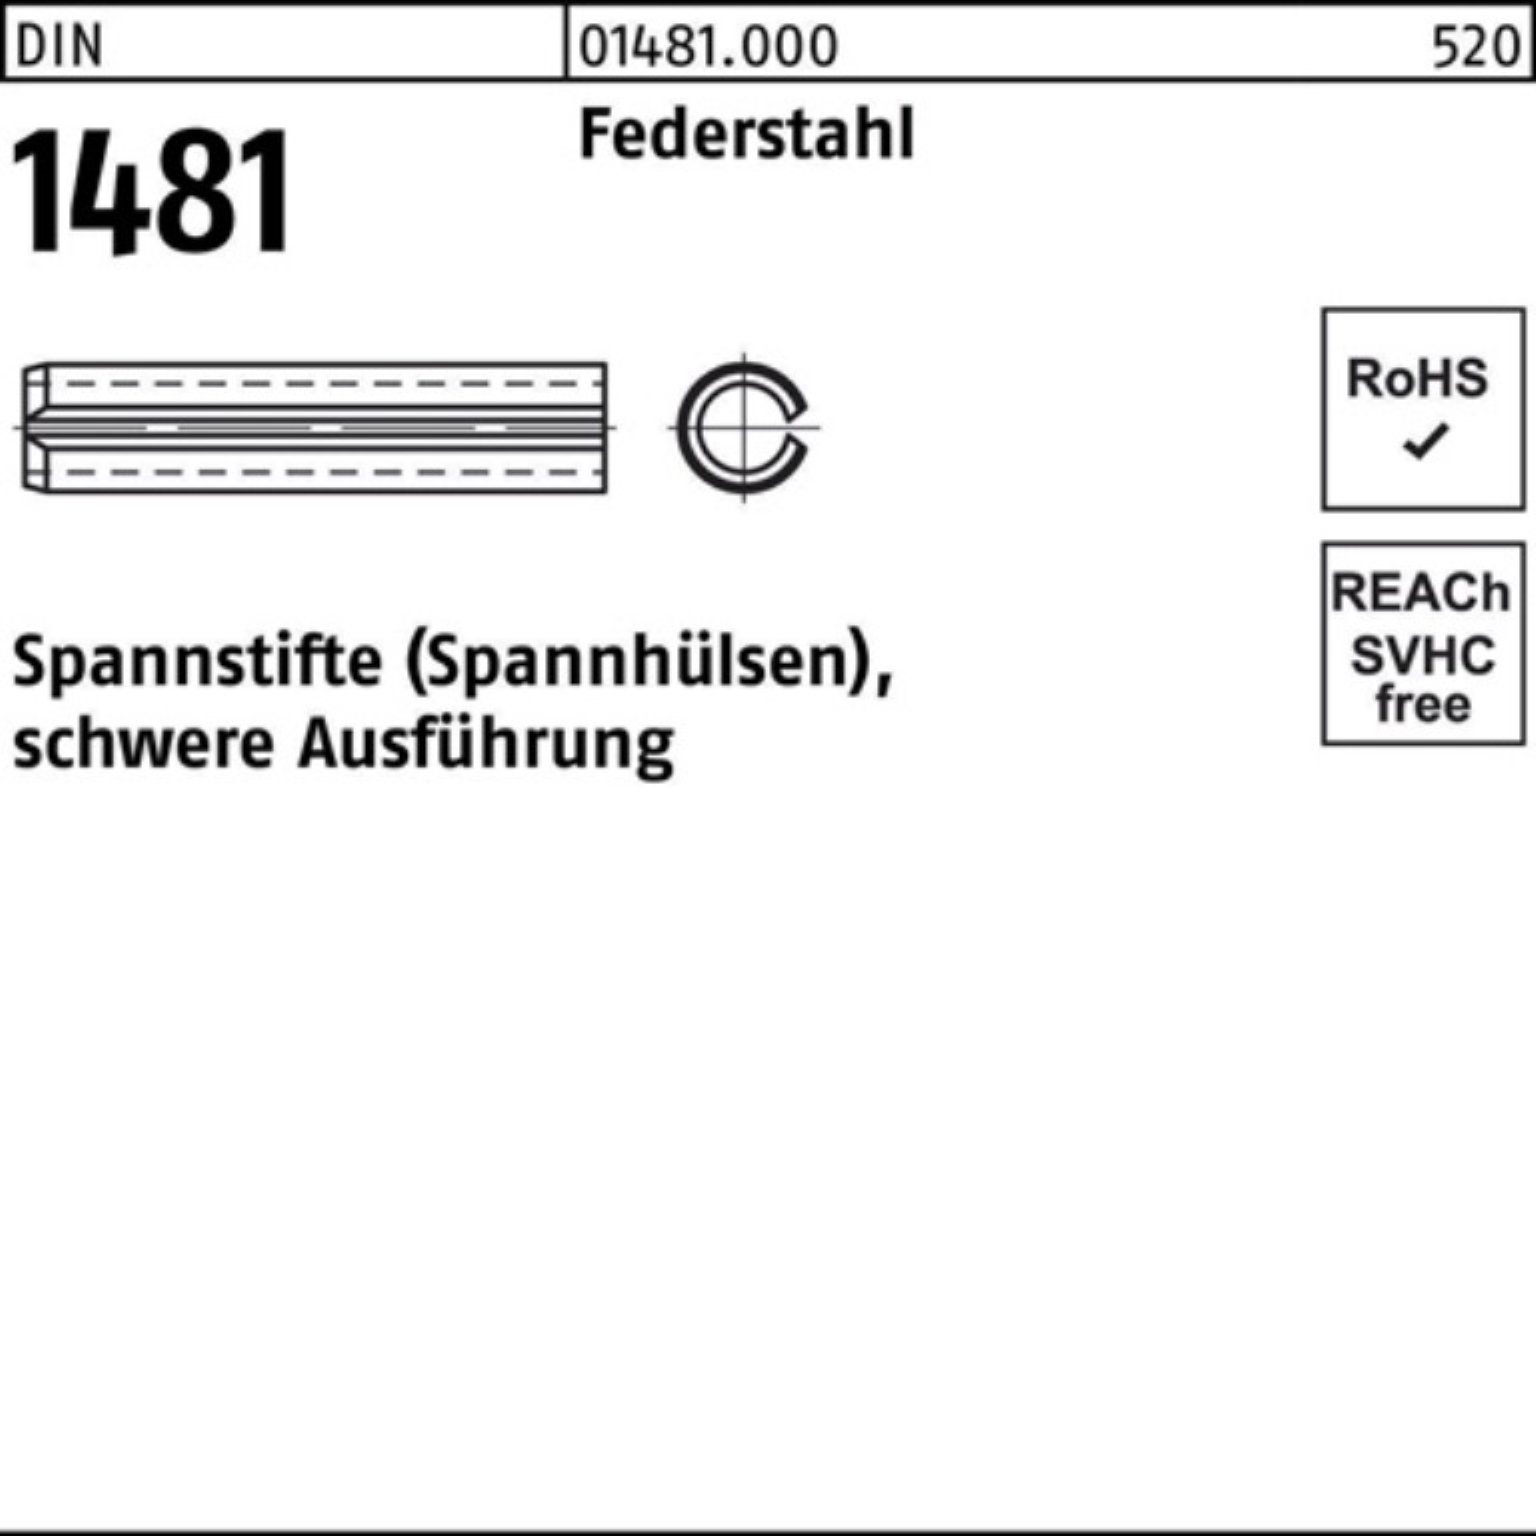 Reyher Spannstift 100er Pack Spannstift DIN 1481 28x 28 Federstahl schwere Ausführung 1